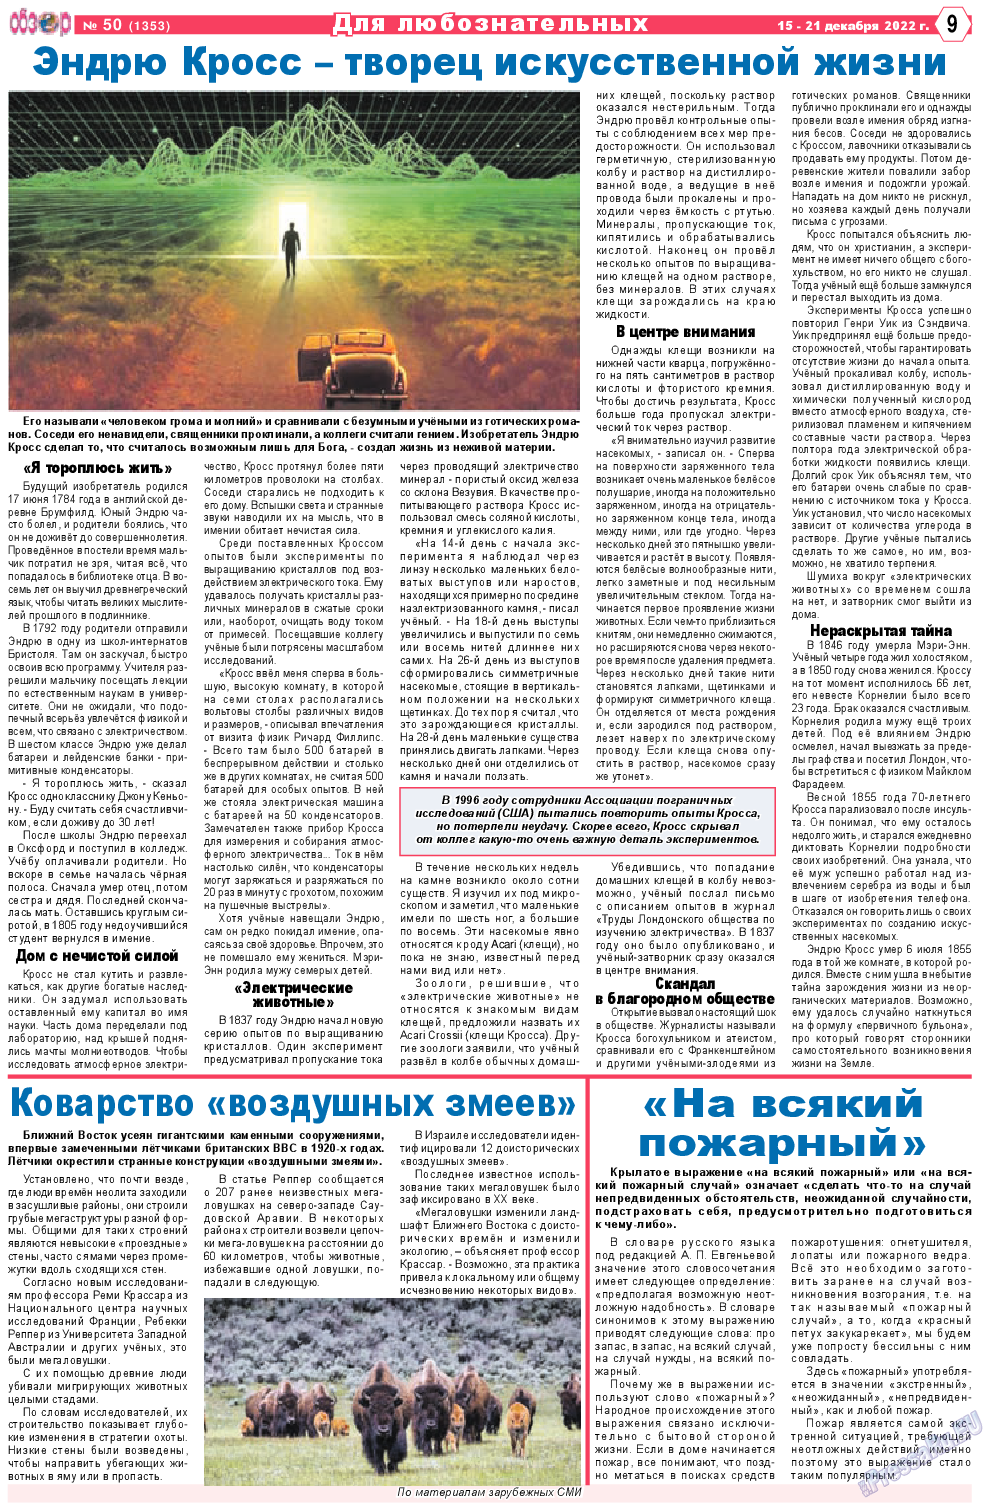 Обзор, газета. 2022 №50 стр.9